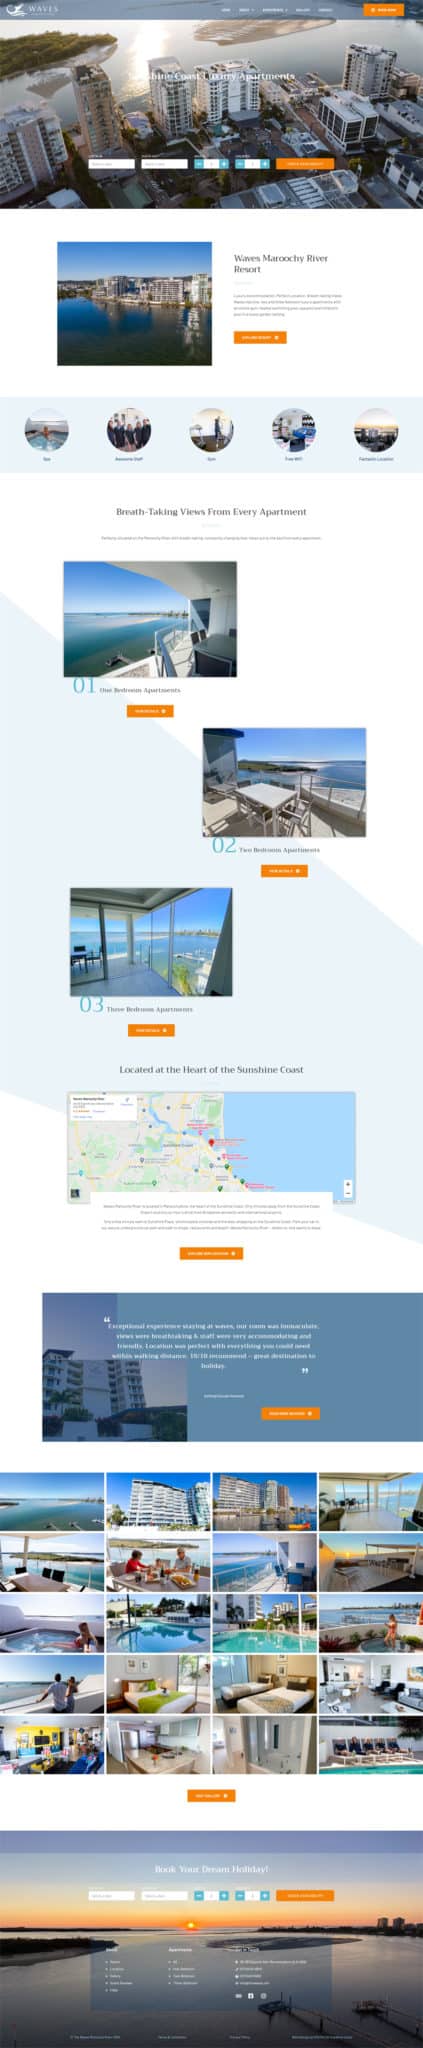 Luxury holiday apartment website design sunshine coast